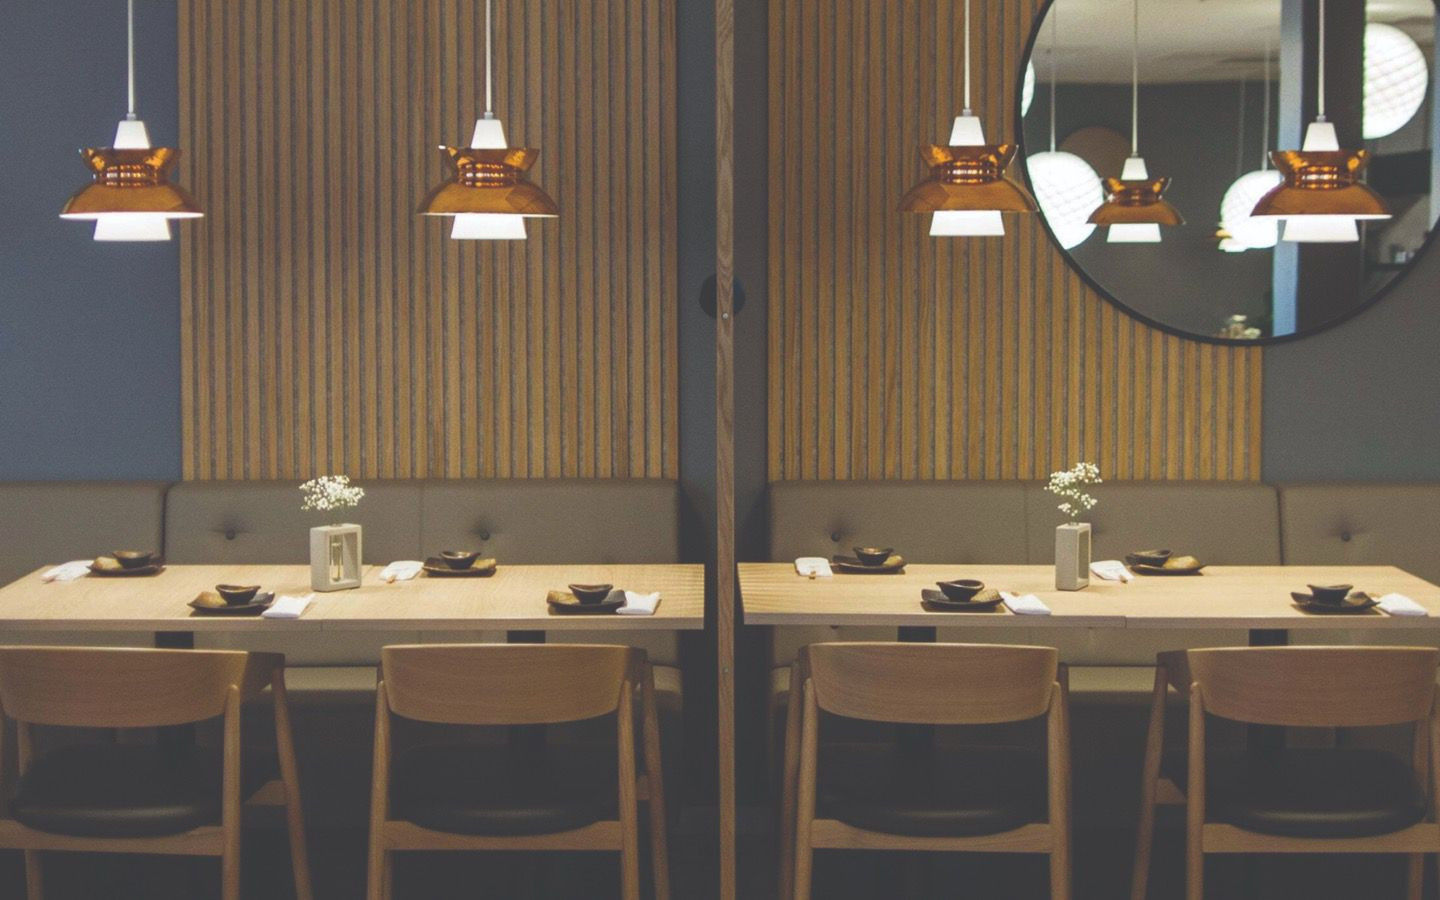 WoodUpp.es - Dos paneles dan el toque perfecto a un comedor elegante y  moderno. ¡Gracias @hectortomass por compartir tu proyecto! 😊 #WoodUppES # WoodUpp #akupanel #decoracion #madera #sostenibilidad #interiorismo  #diseñodeinteriores